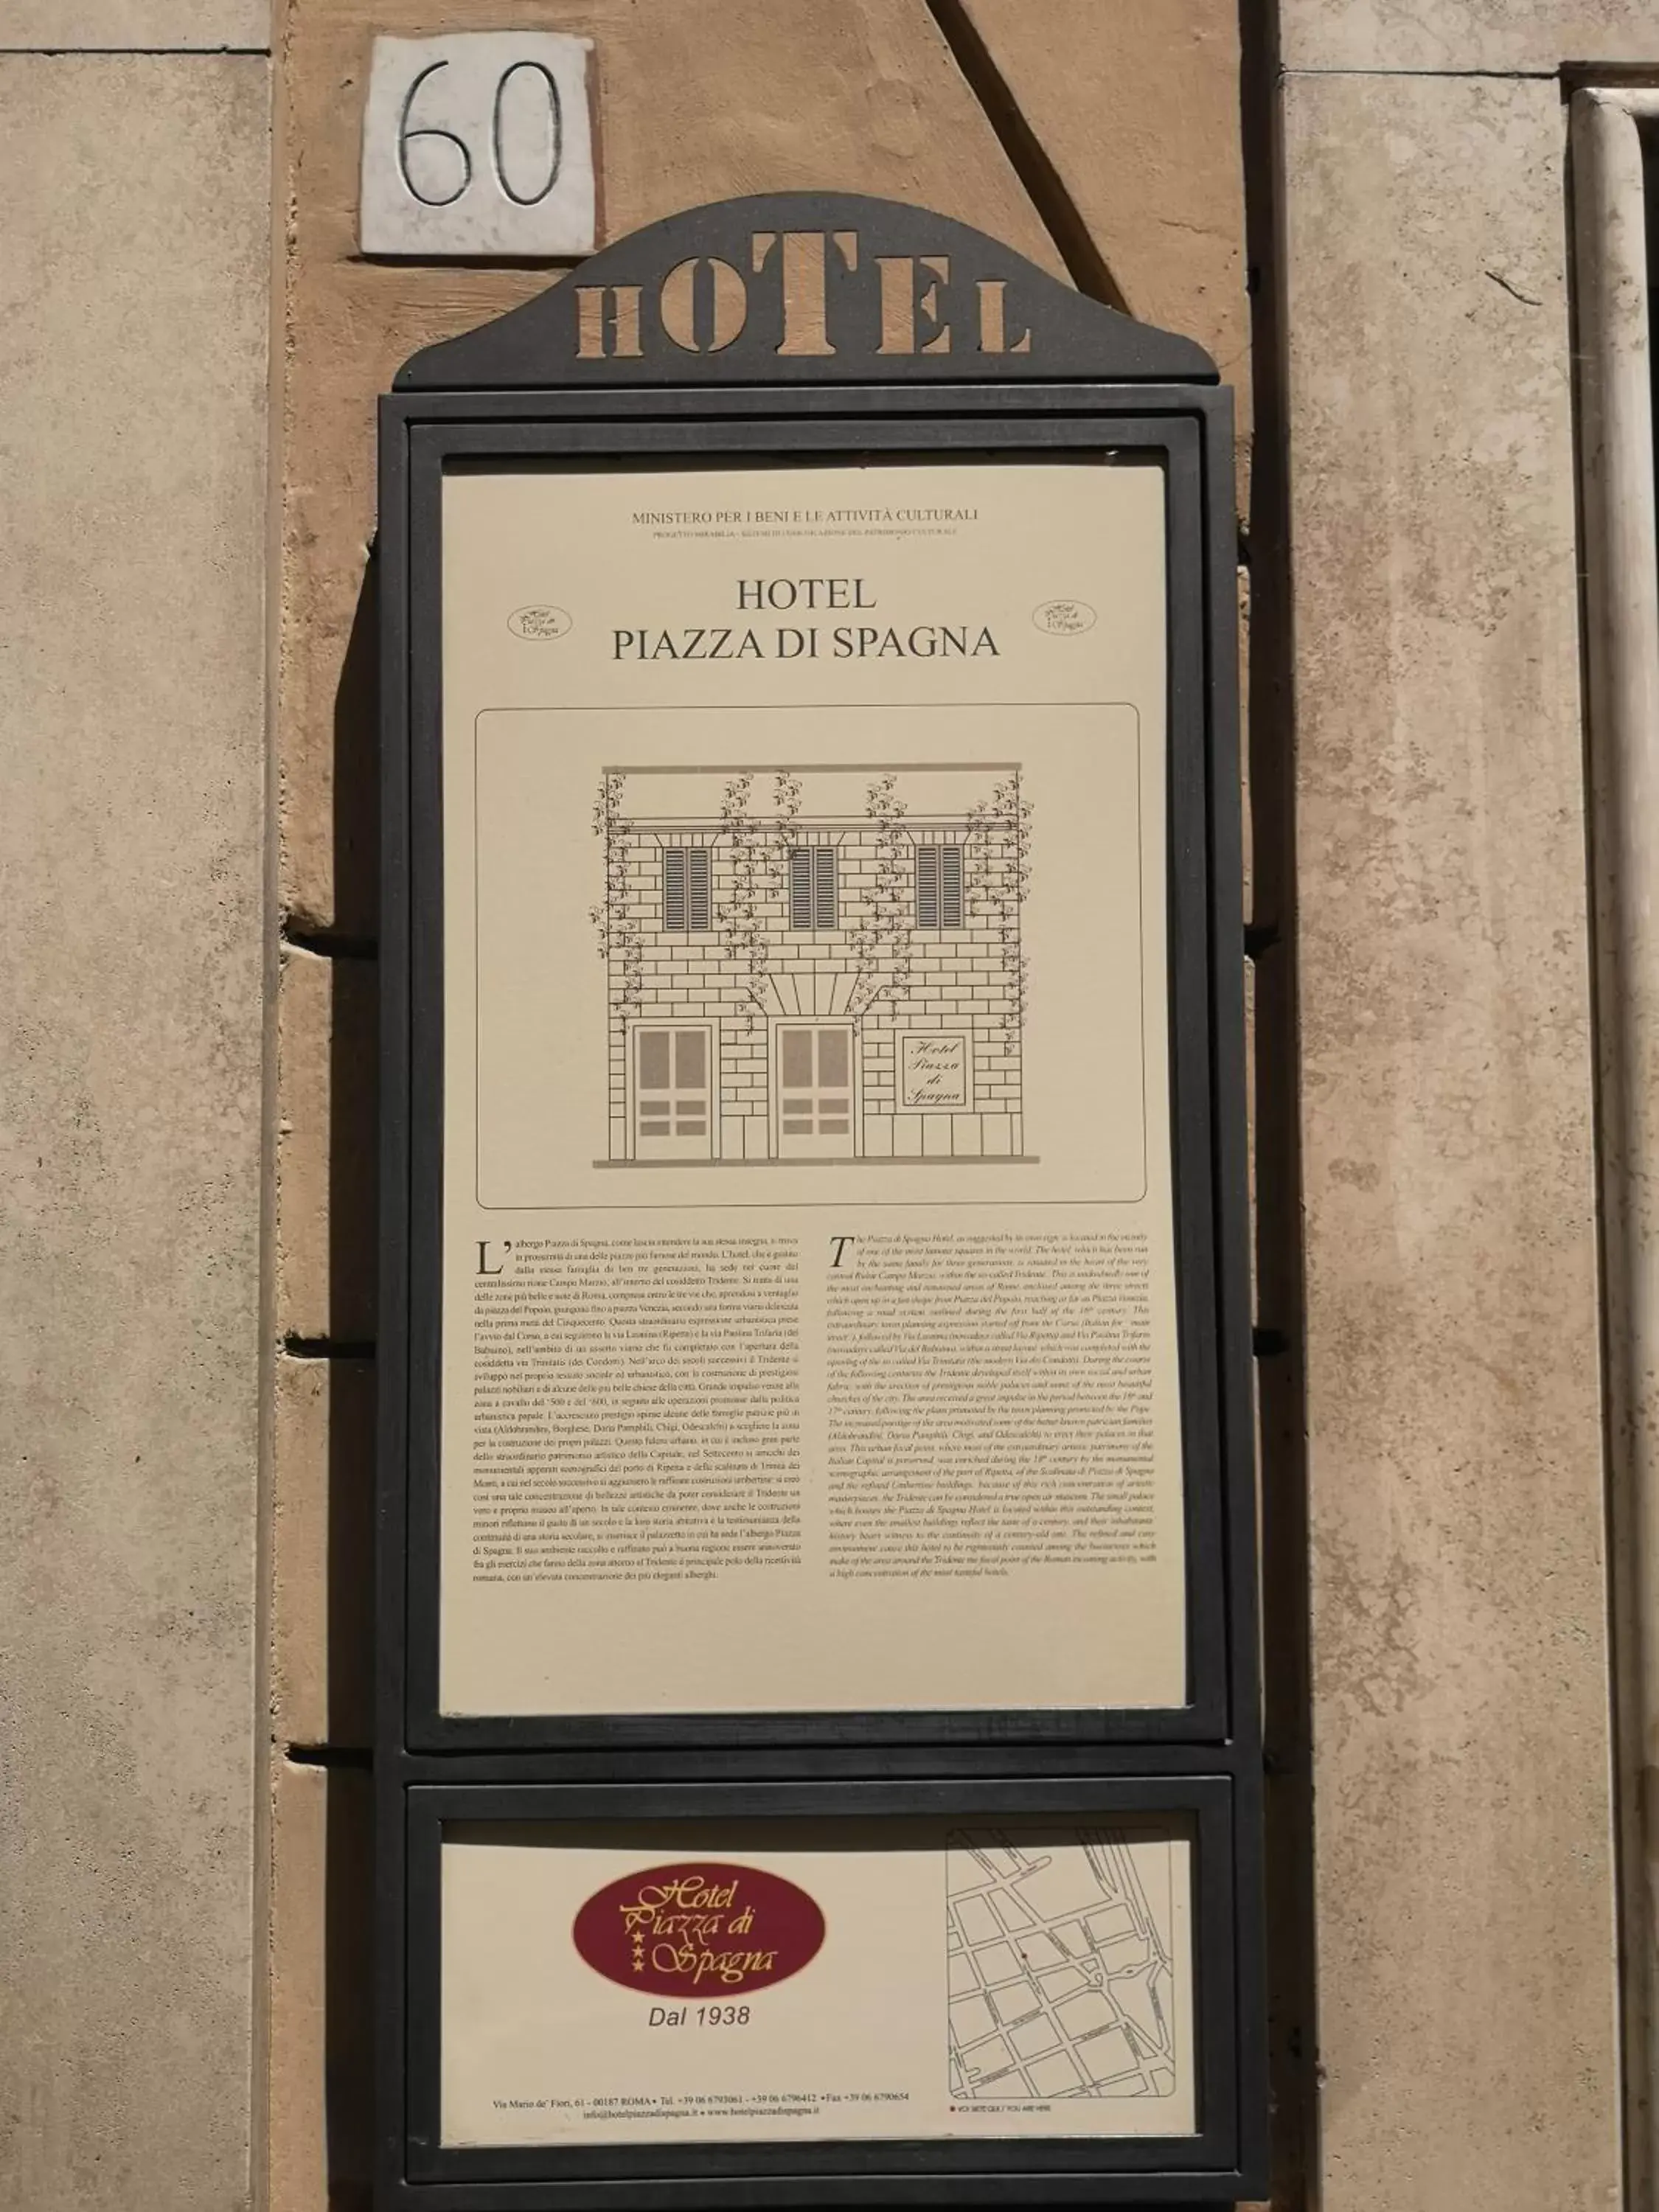 Decorative detail in Hotel Piazza Di Spagna